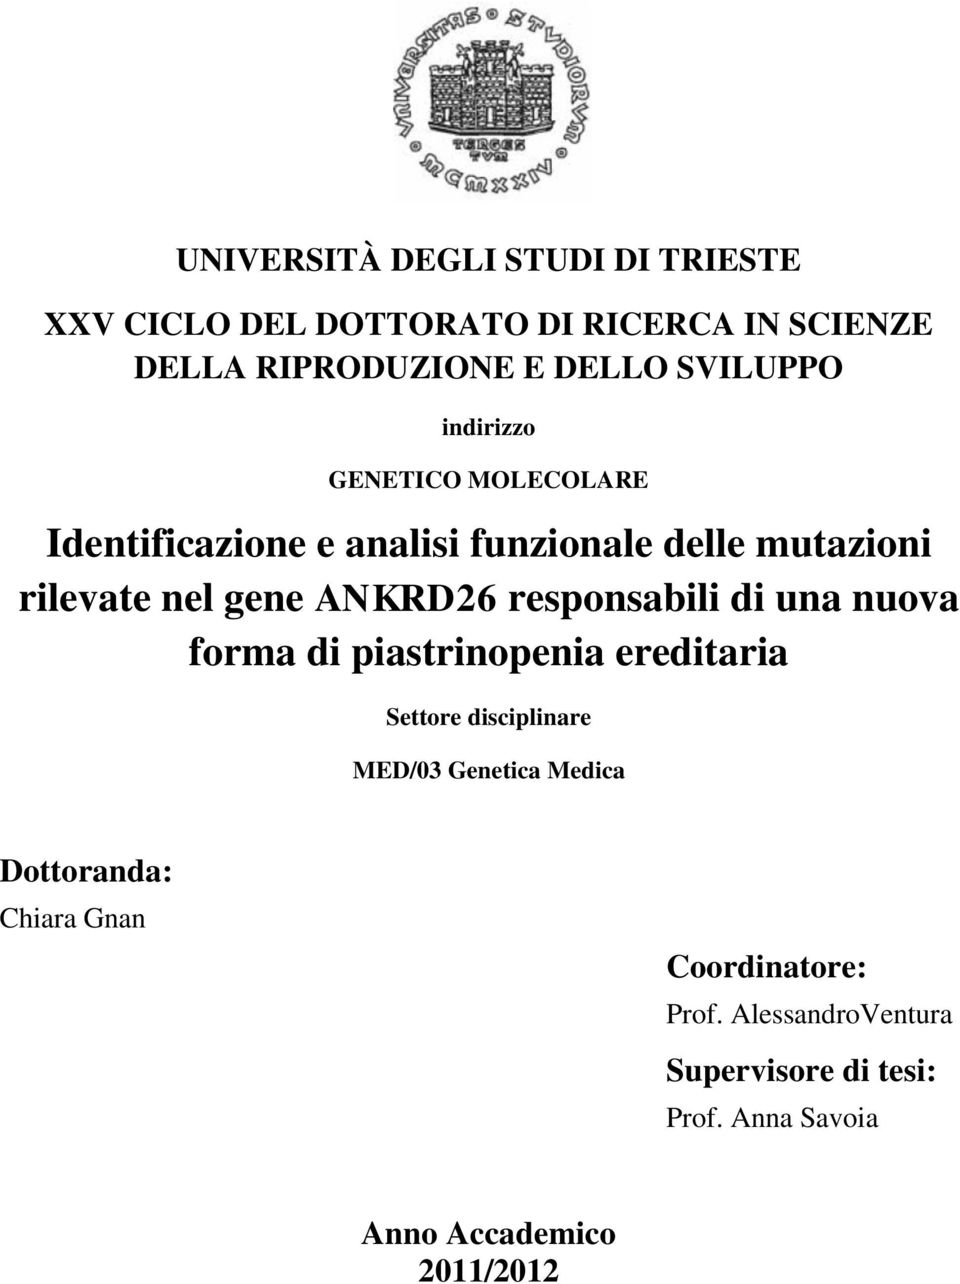 ANKRD26 responsabili di una nuova forma di piastrinopenia ereditaria Settore disciplinare MED/03 Genetica Medica